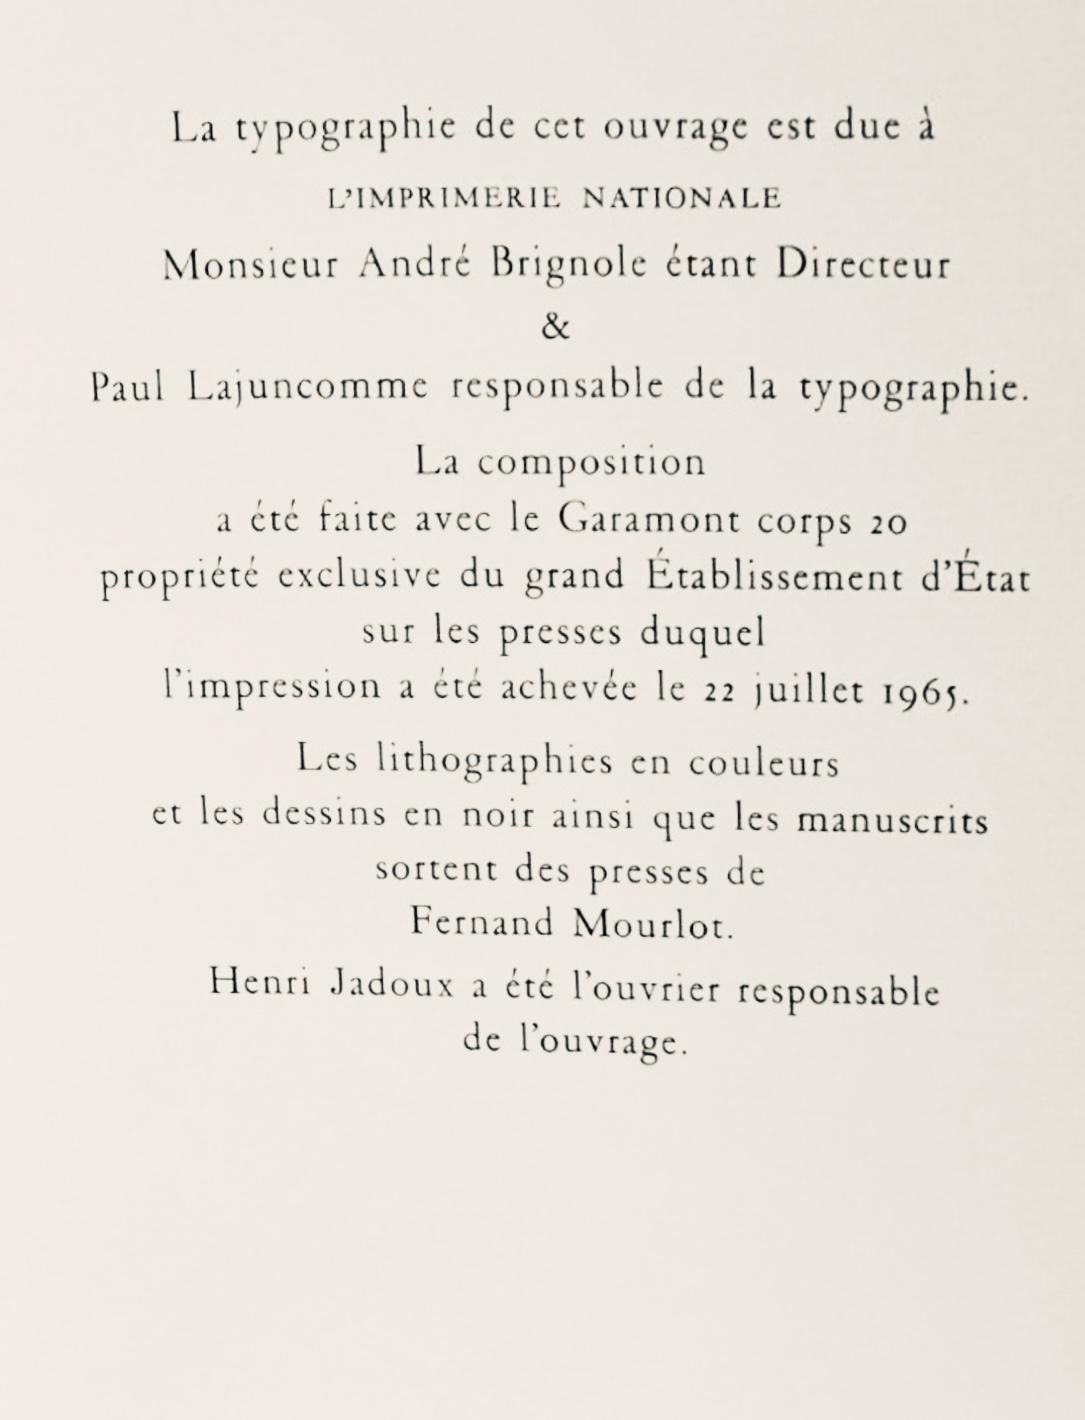 Villon, Composition, Lettre à mon peintre Raoul Dufy (after) For Sale 2